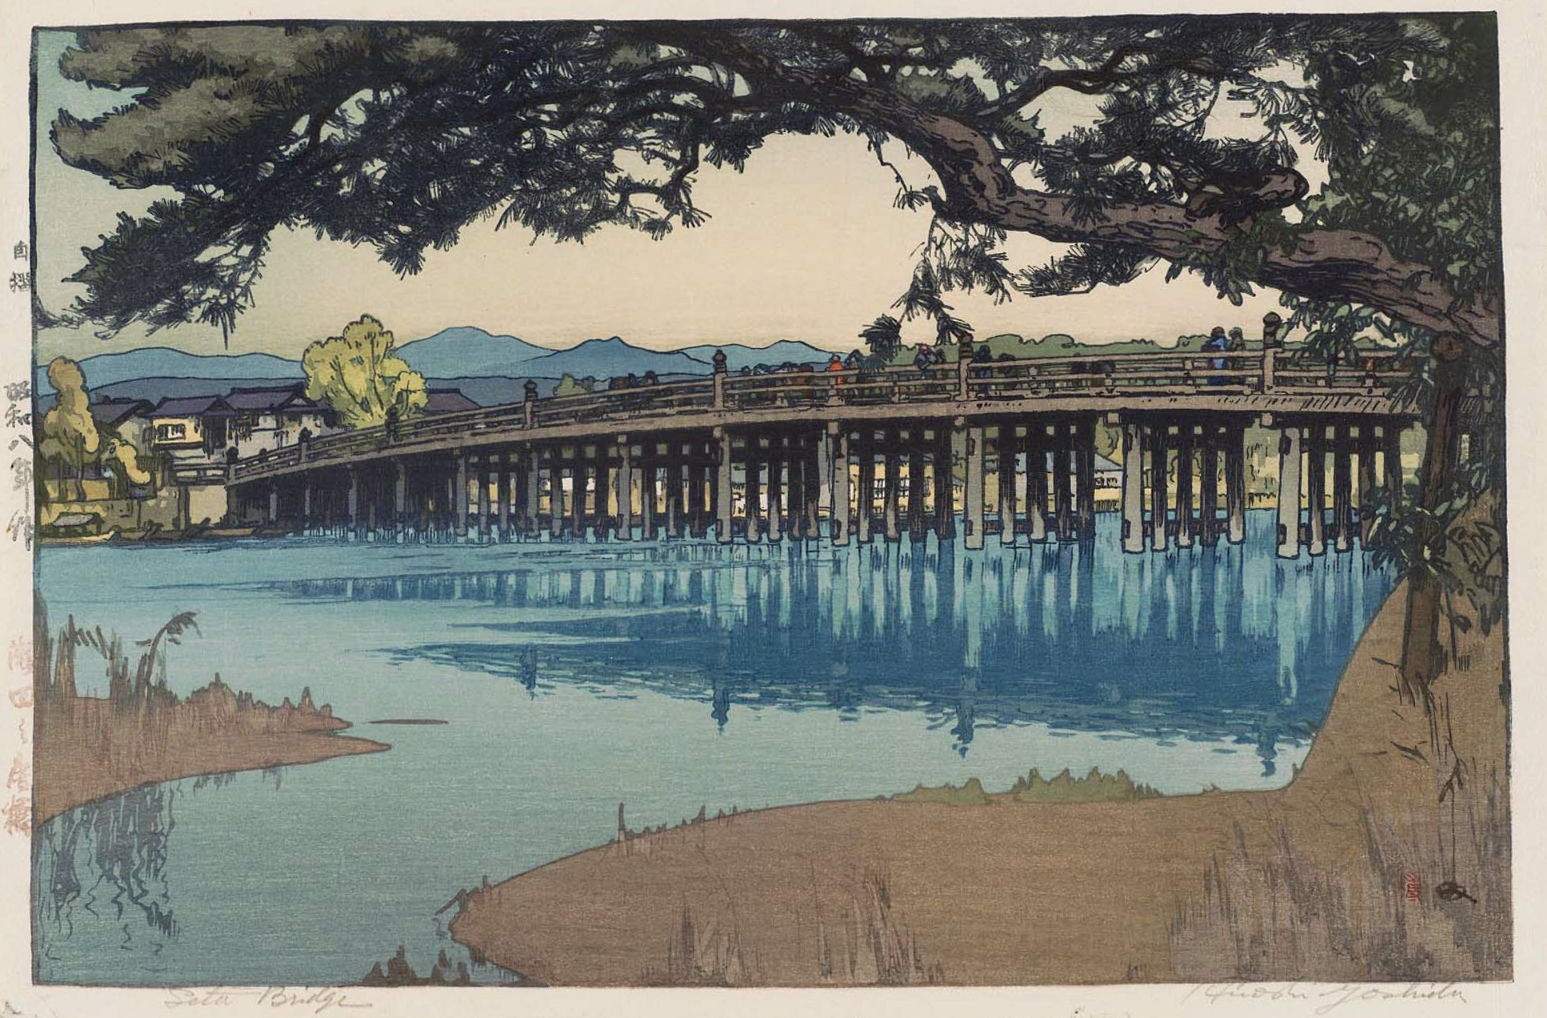 Hiroshi Yoshida “Seta Bridge” 1933 woodblock print